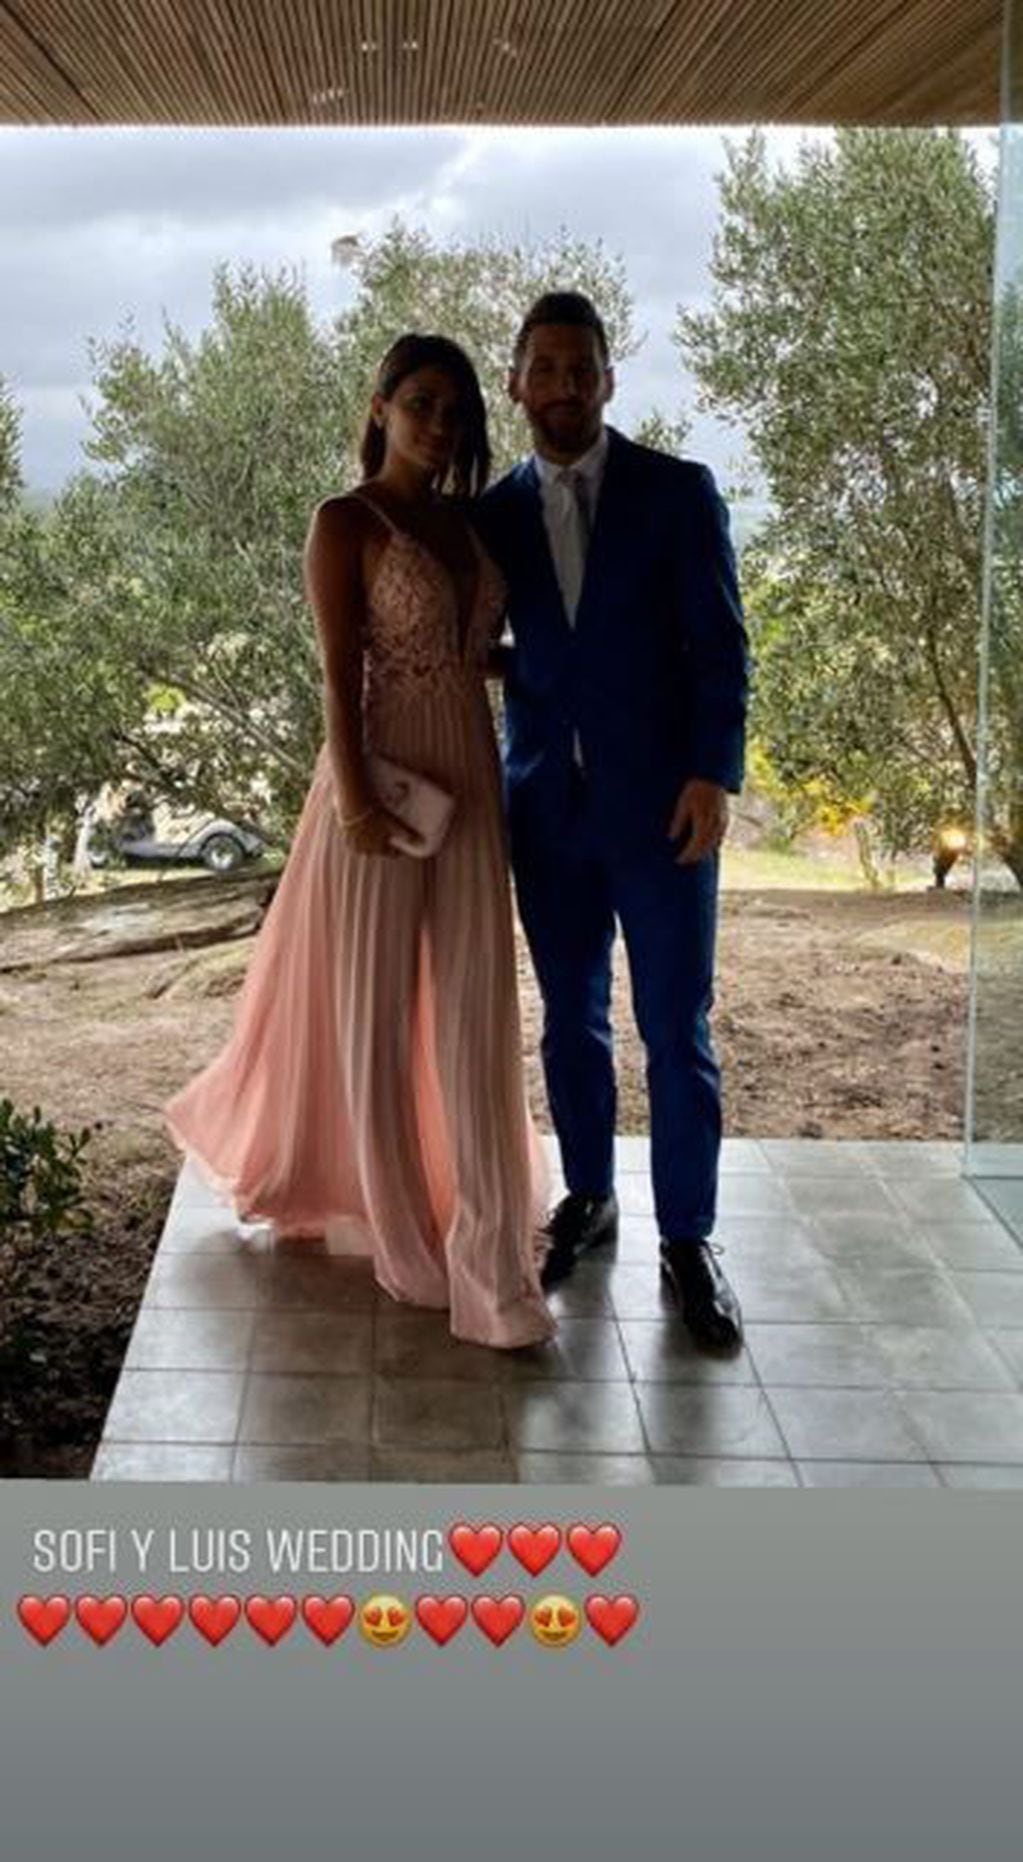 Gracias a su vestido escotado y con transparencias, Antonela Roccuzzo se robó todos los flashes en la nueva boda de Luis Suárez y Sofía Balbi. Instagram/antonelaroccuzzo